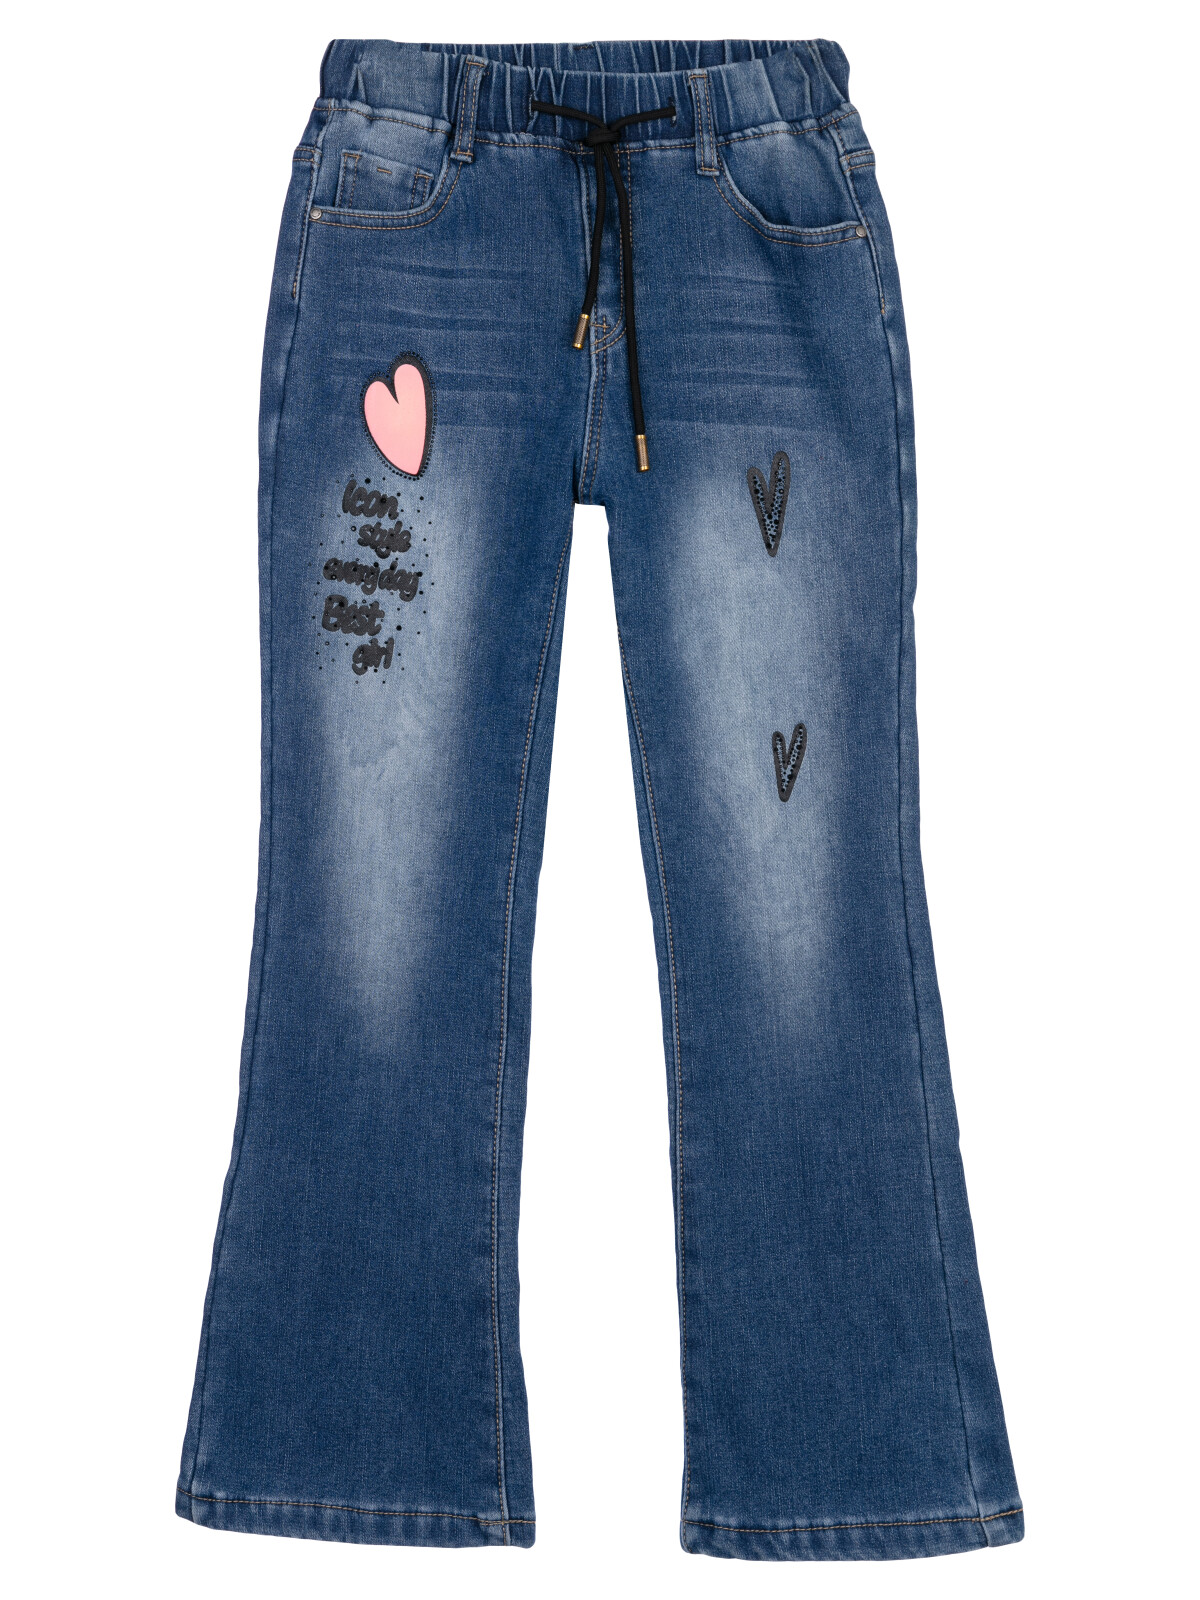 Брюки текстильные джинсовые утепленные флисом для девочек PlayToday, синий, 146